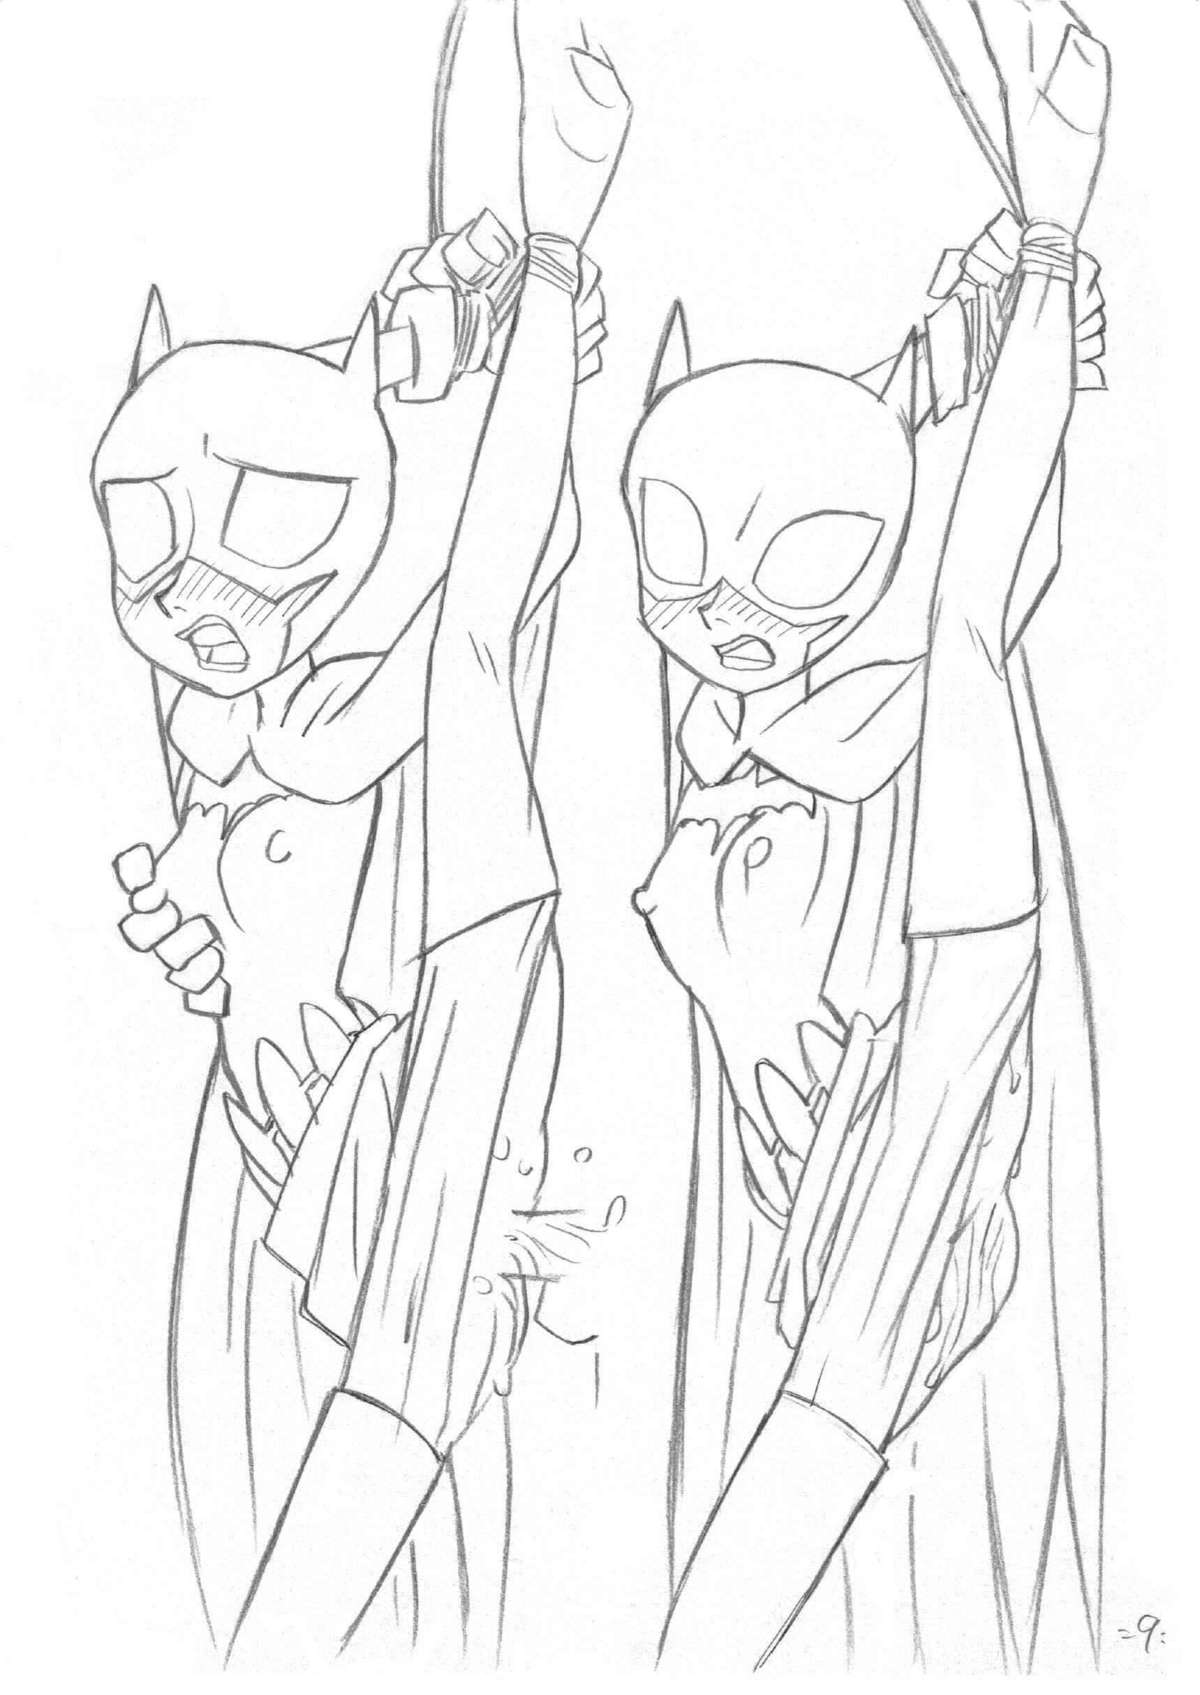 [Union Of The Snake (Shinda Mane)] Psychosomatic Counterfeit Ex: Batgirl 